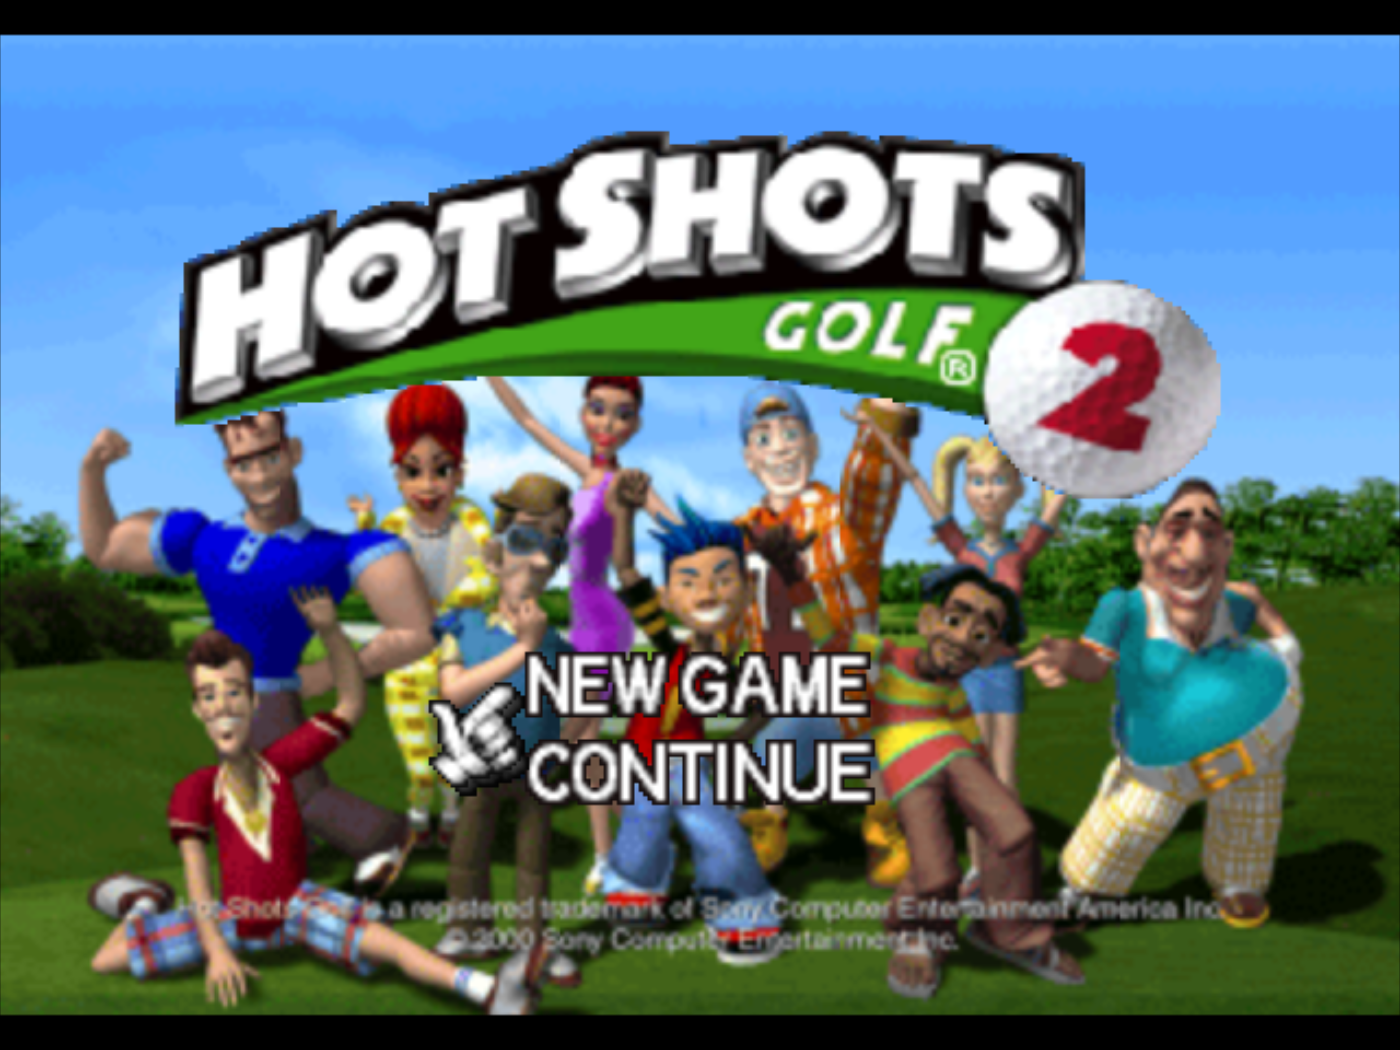 Hot Shots Golf 2 - PlayStation 1 (PS1) Game